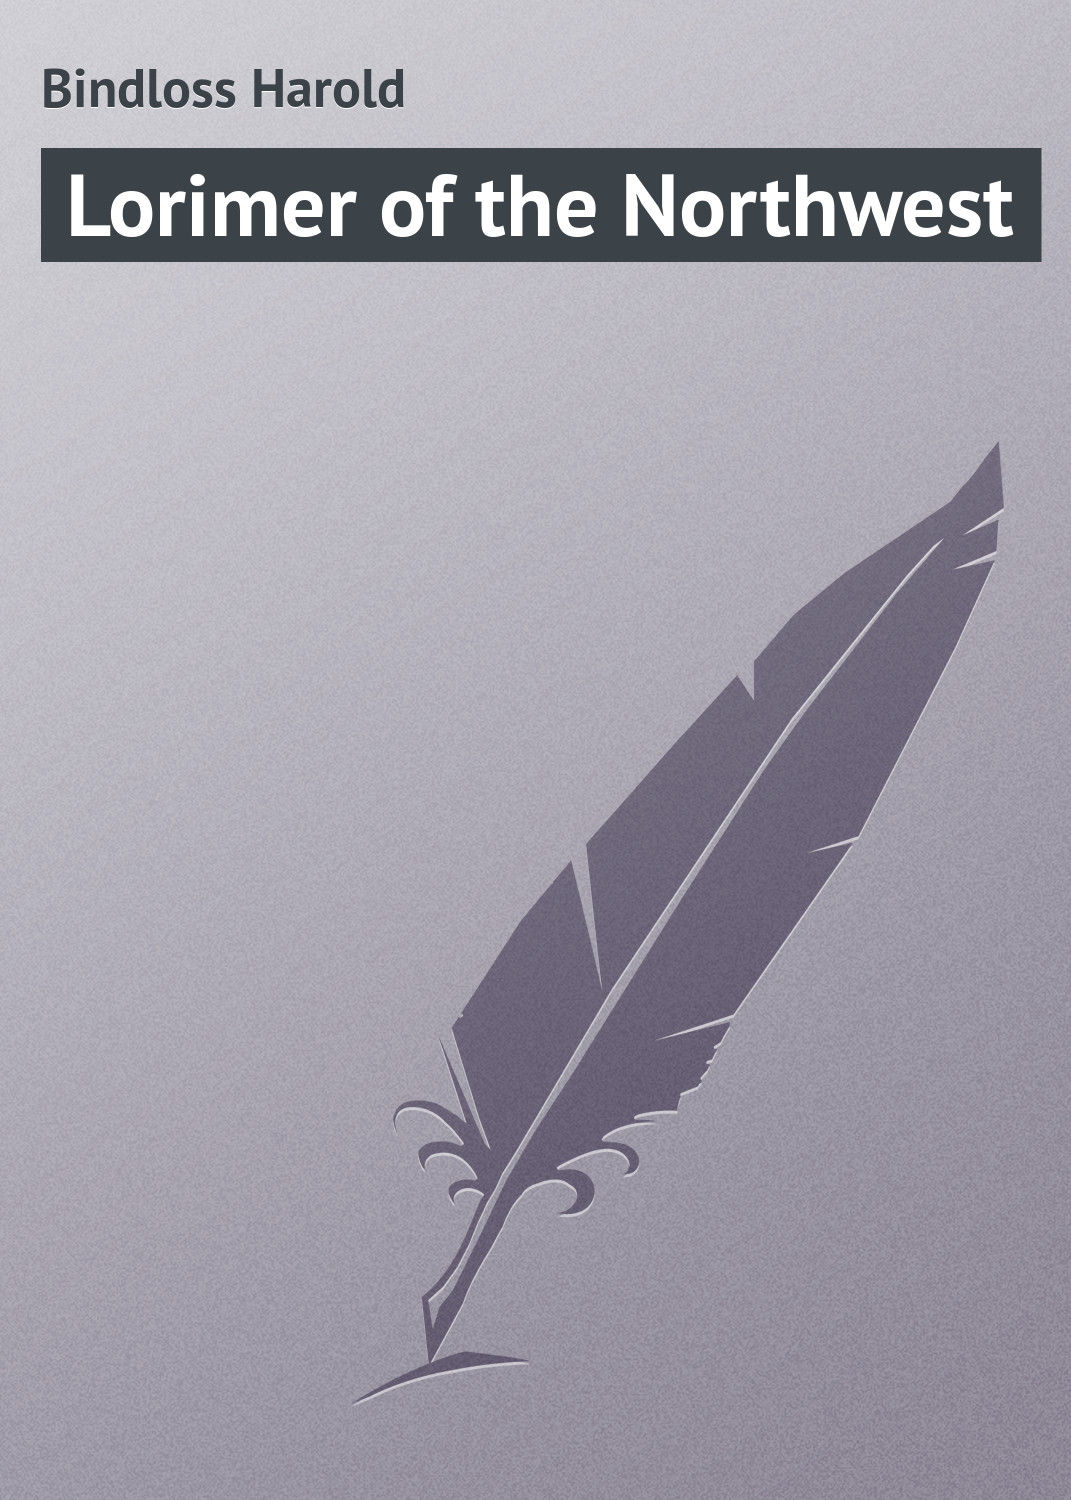 Книга Lorimer of the Northwest из серии , созданная Harold Bindloss, может относится к жанру Зарубежная классика, Иностранные языки. Стоимость электронной книги Lorimer of the Northwest с идентификатором 23155267 составляет 5.99 руб.